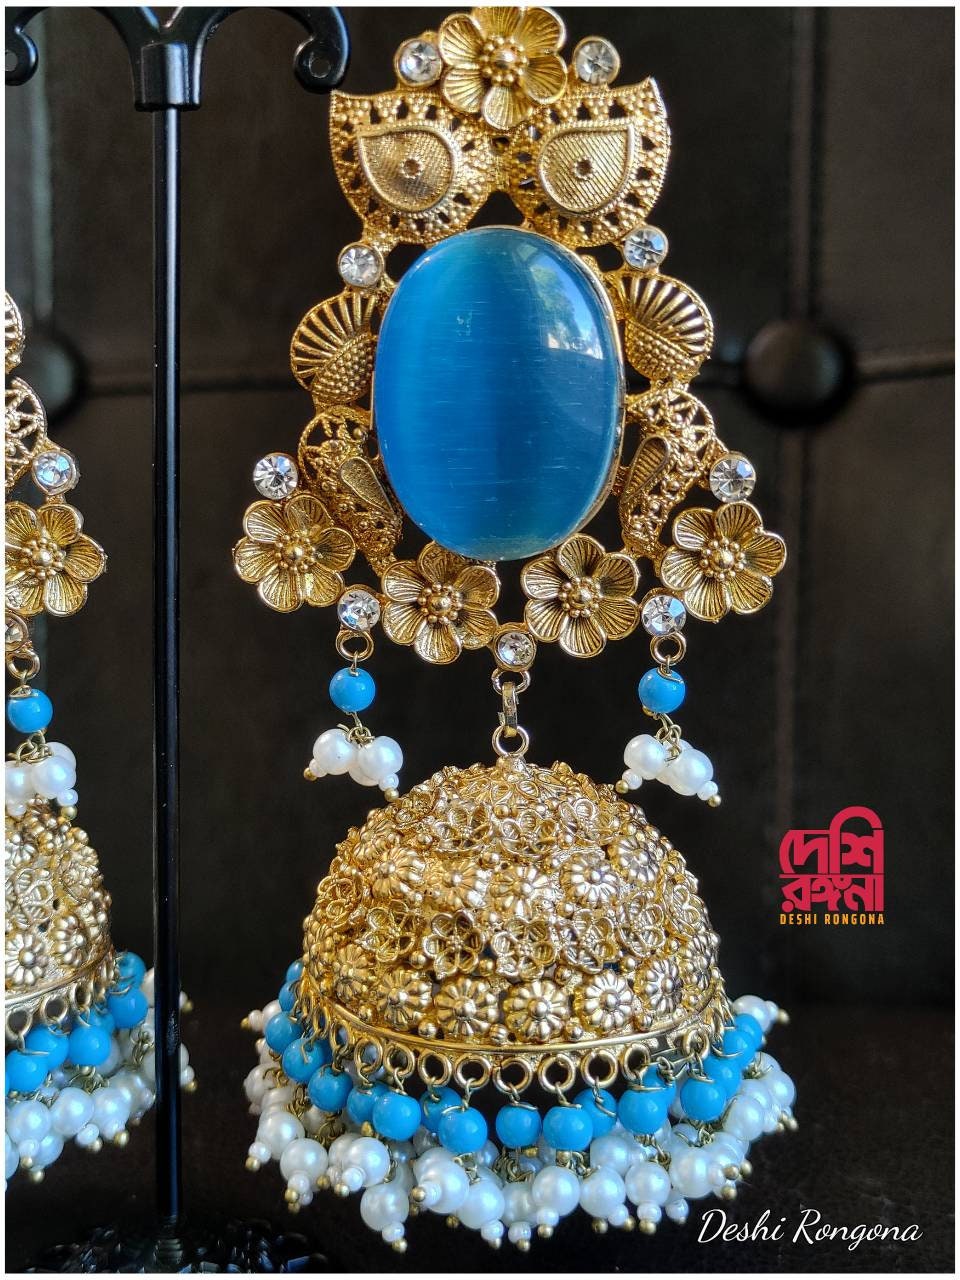 Designer Jhumka Earrings, Oversized 22K Gold Plated,AD Stone Premium Quality, Indian Pakistani Wedding Jewelry, Sabyasachi Bollywood Fashion